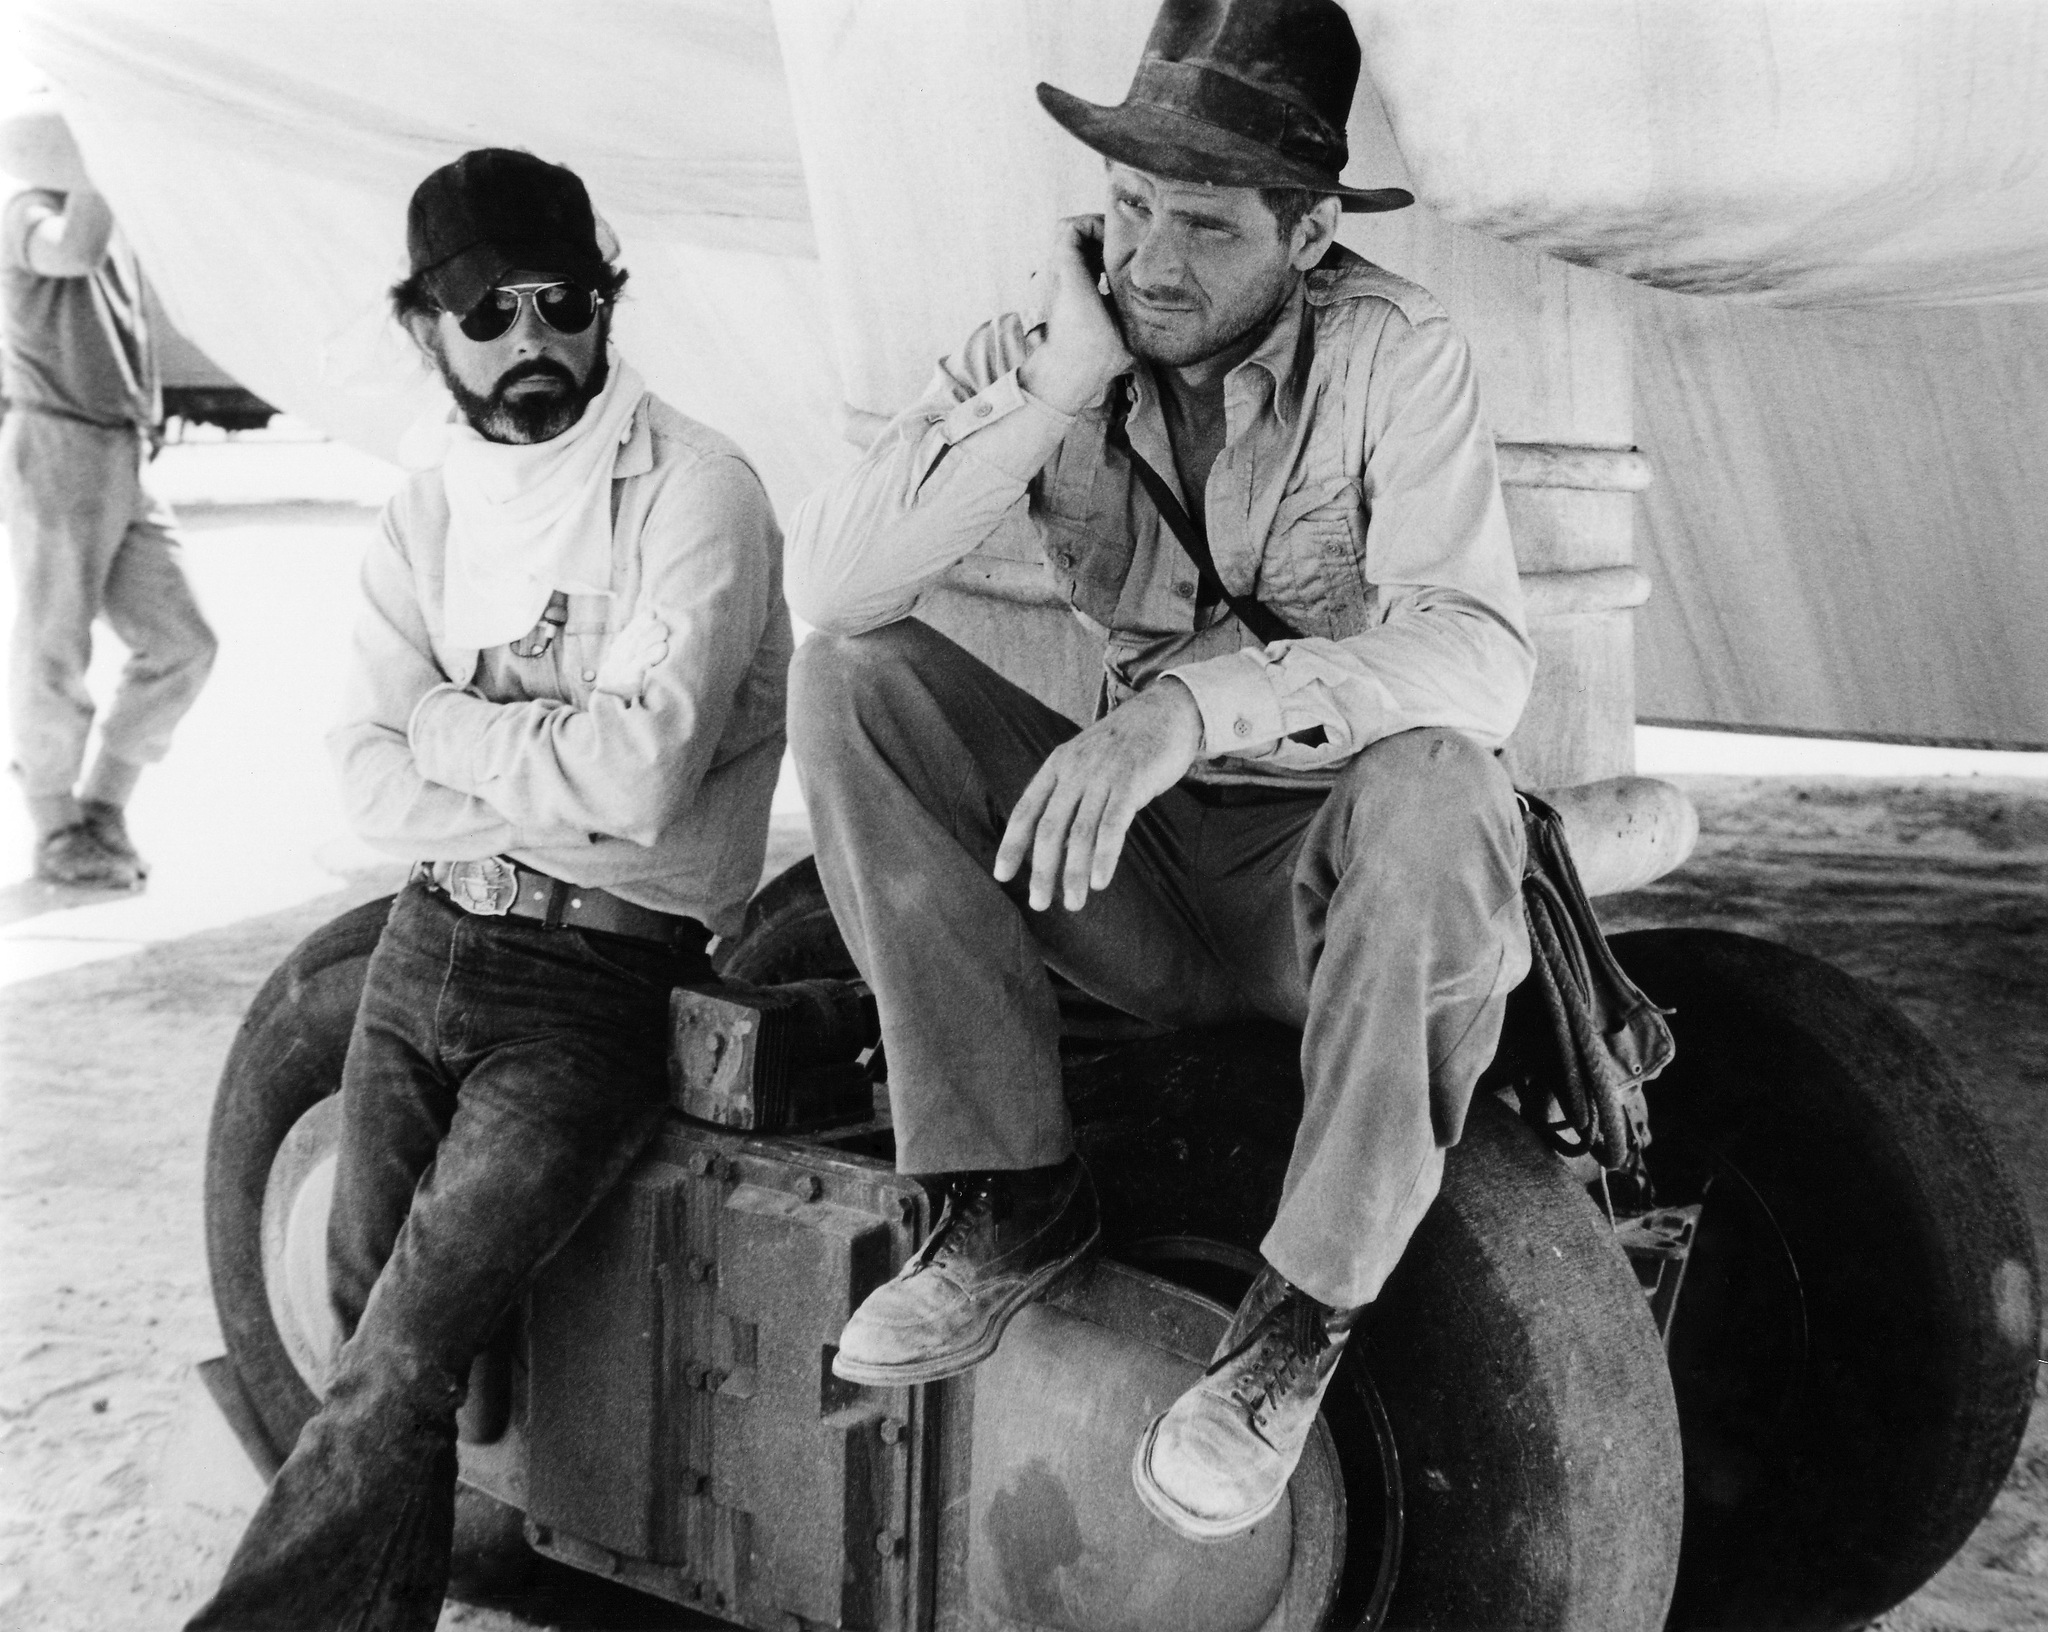 Harrison Ford and George Lucas in Indiana Dzounsas ir dingusios Sandoros skrynios ieskotojai (1981)